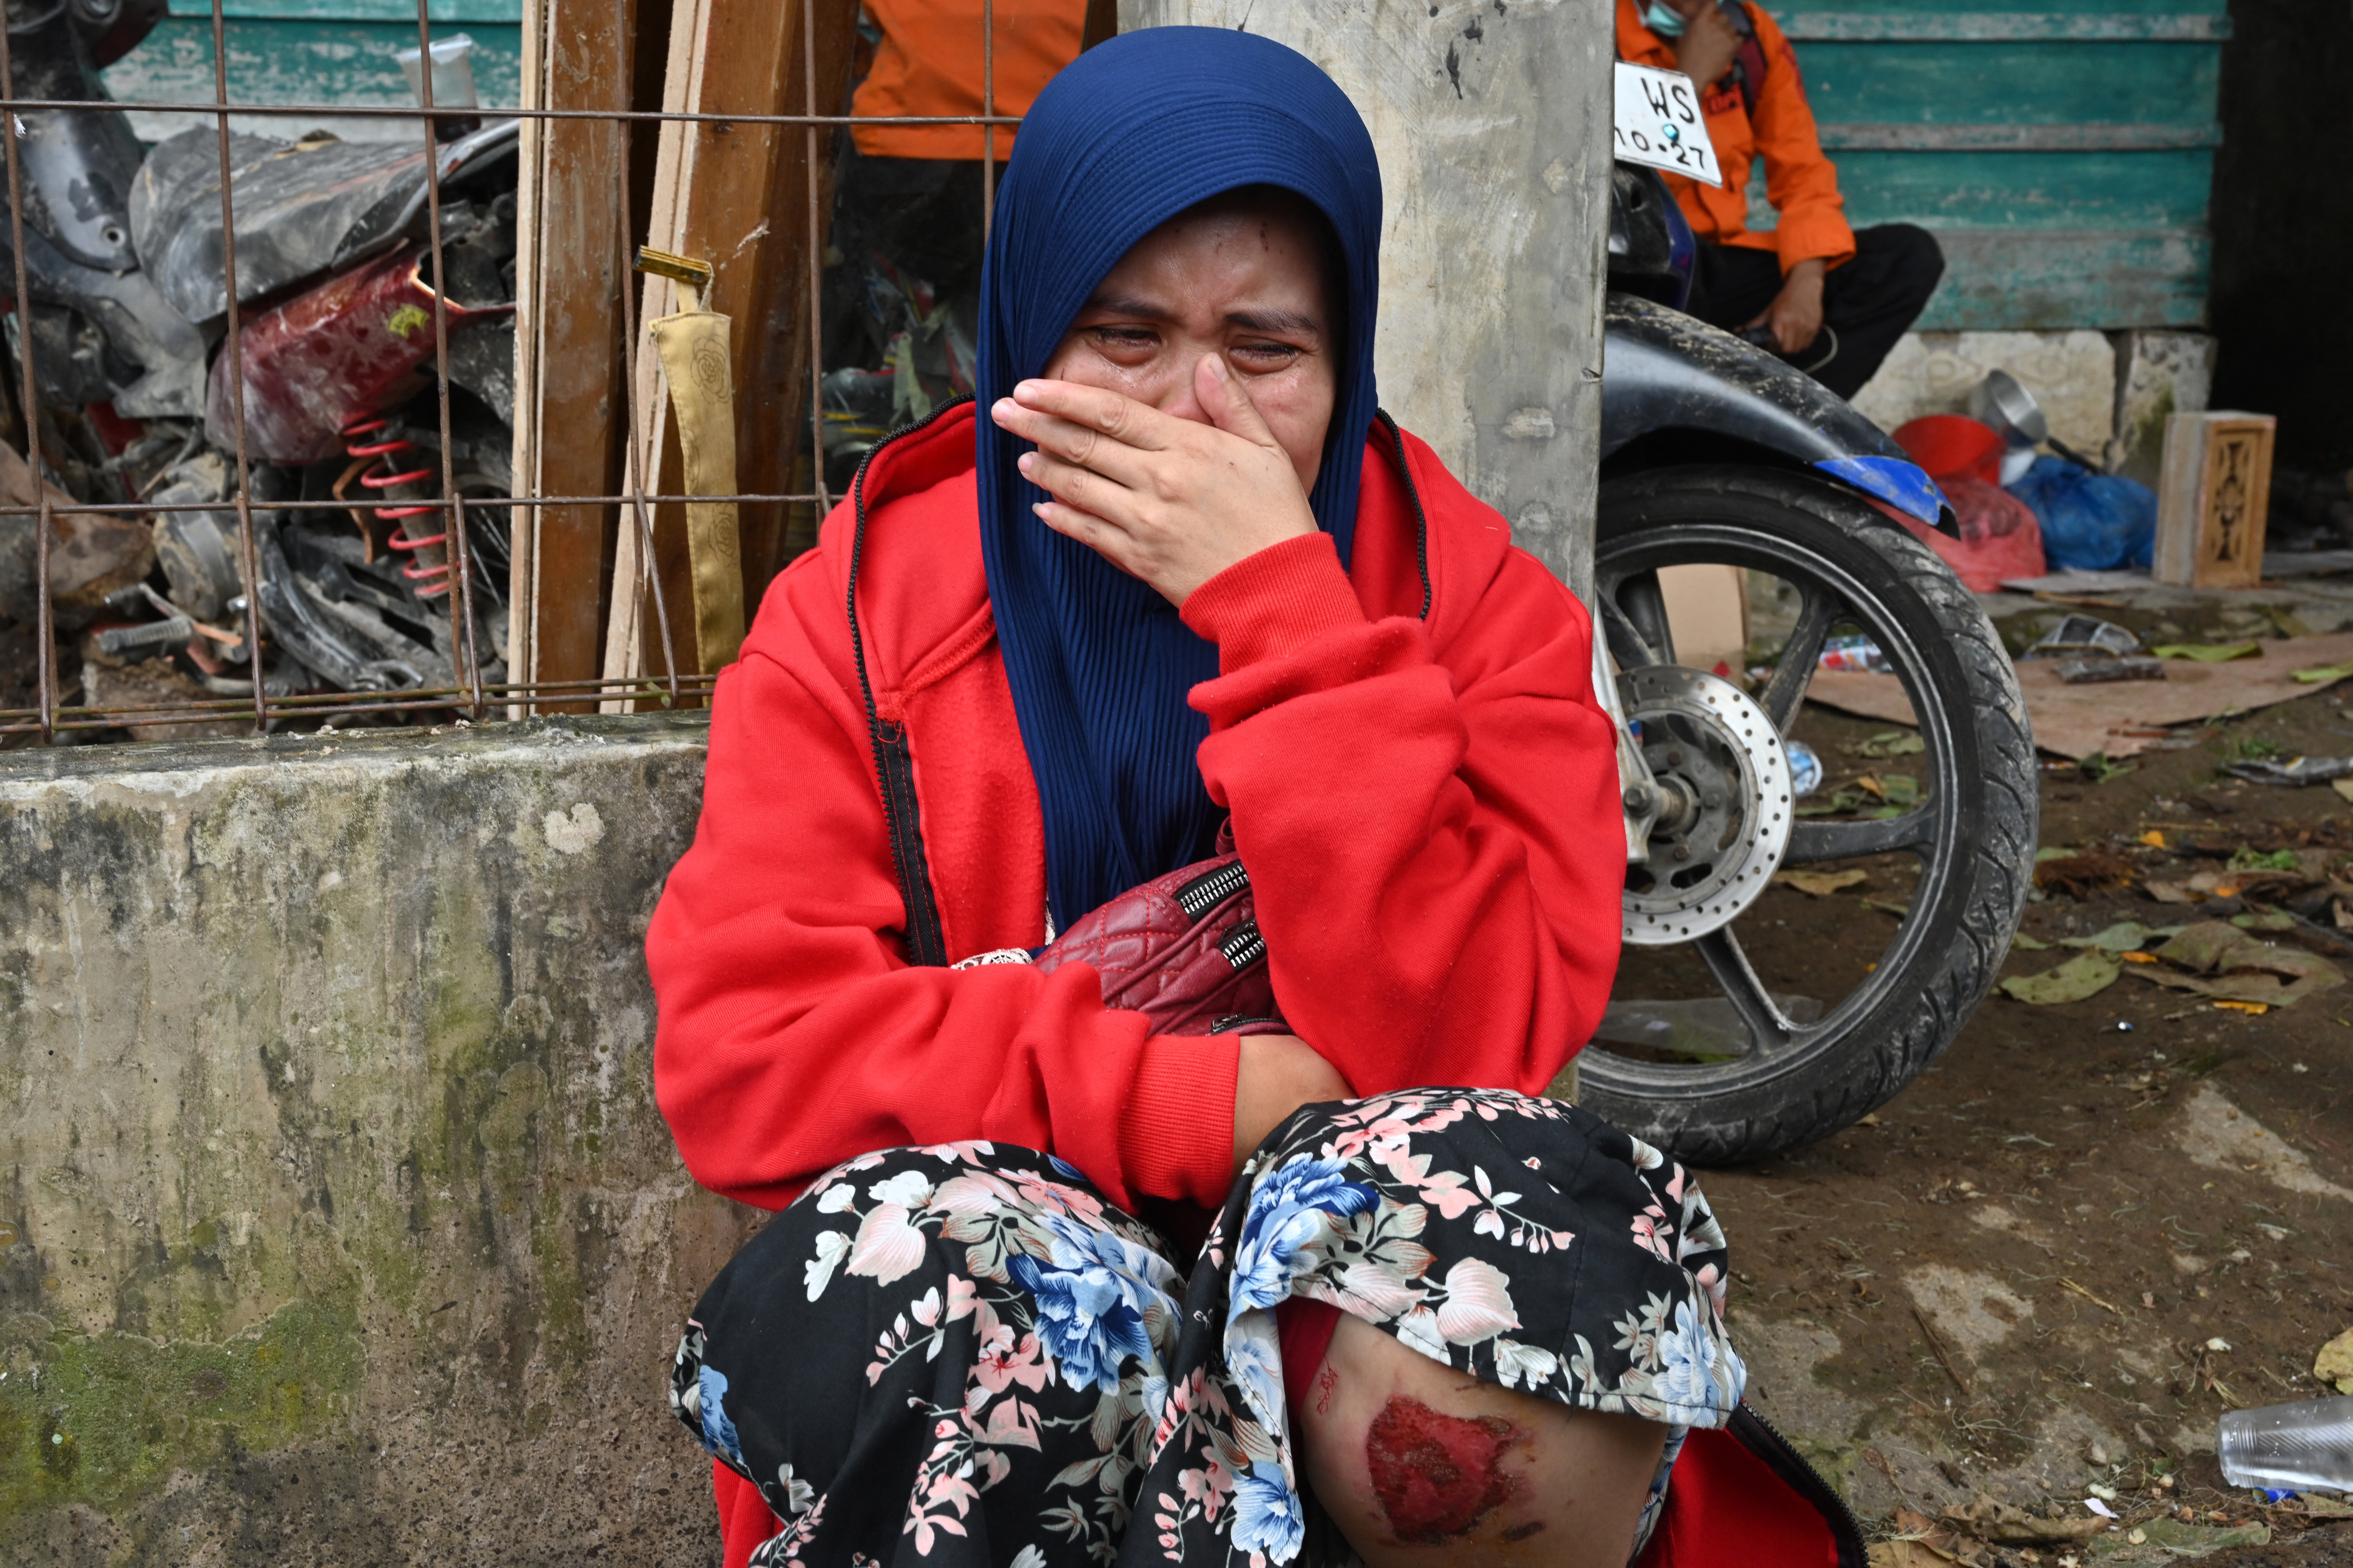 Imas Masfahitah llora mientras el personal de rescate trabaja para encontrar a su hija desaparecida que se cree que está atrapada entre los escombros (ADEK BERRY / AFP)